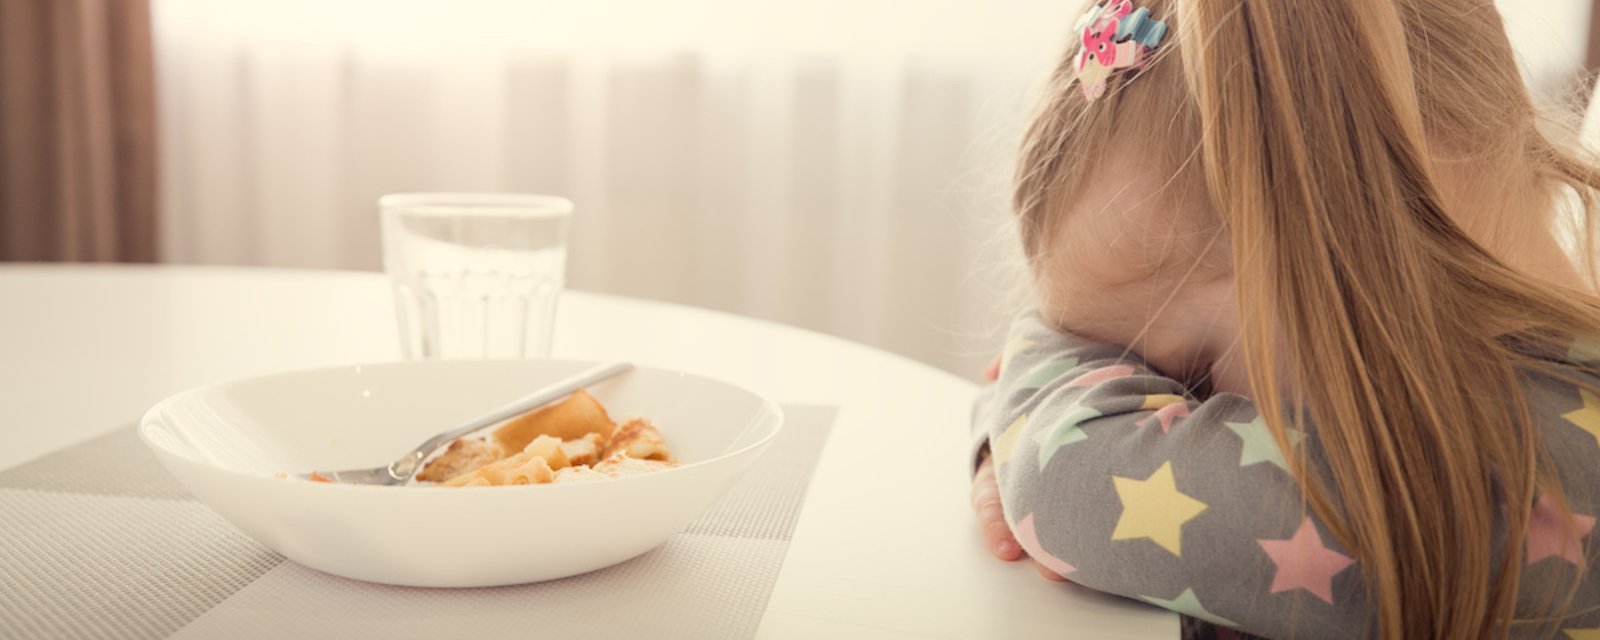 Une spécialiste explique pourquoi il ne faut pas obliger un enfant à terminer son assiette pour avoir un dessert